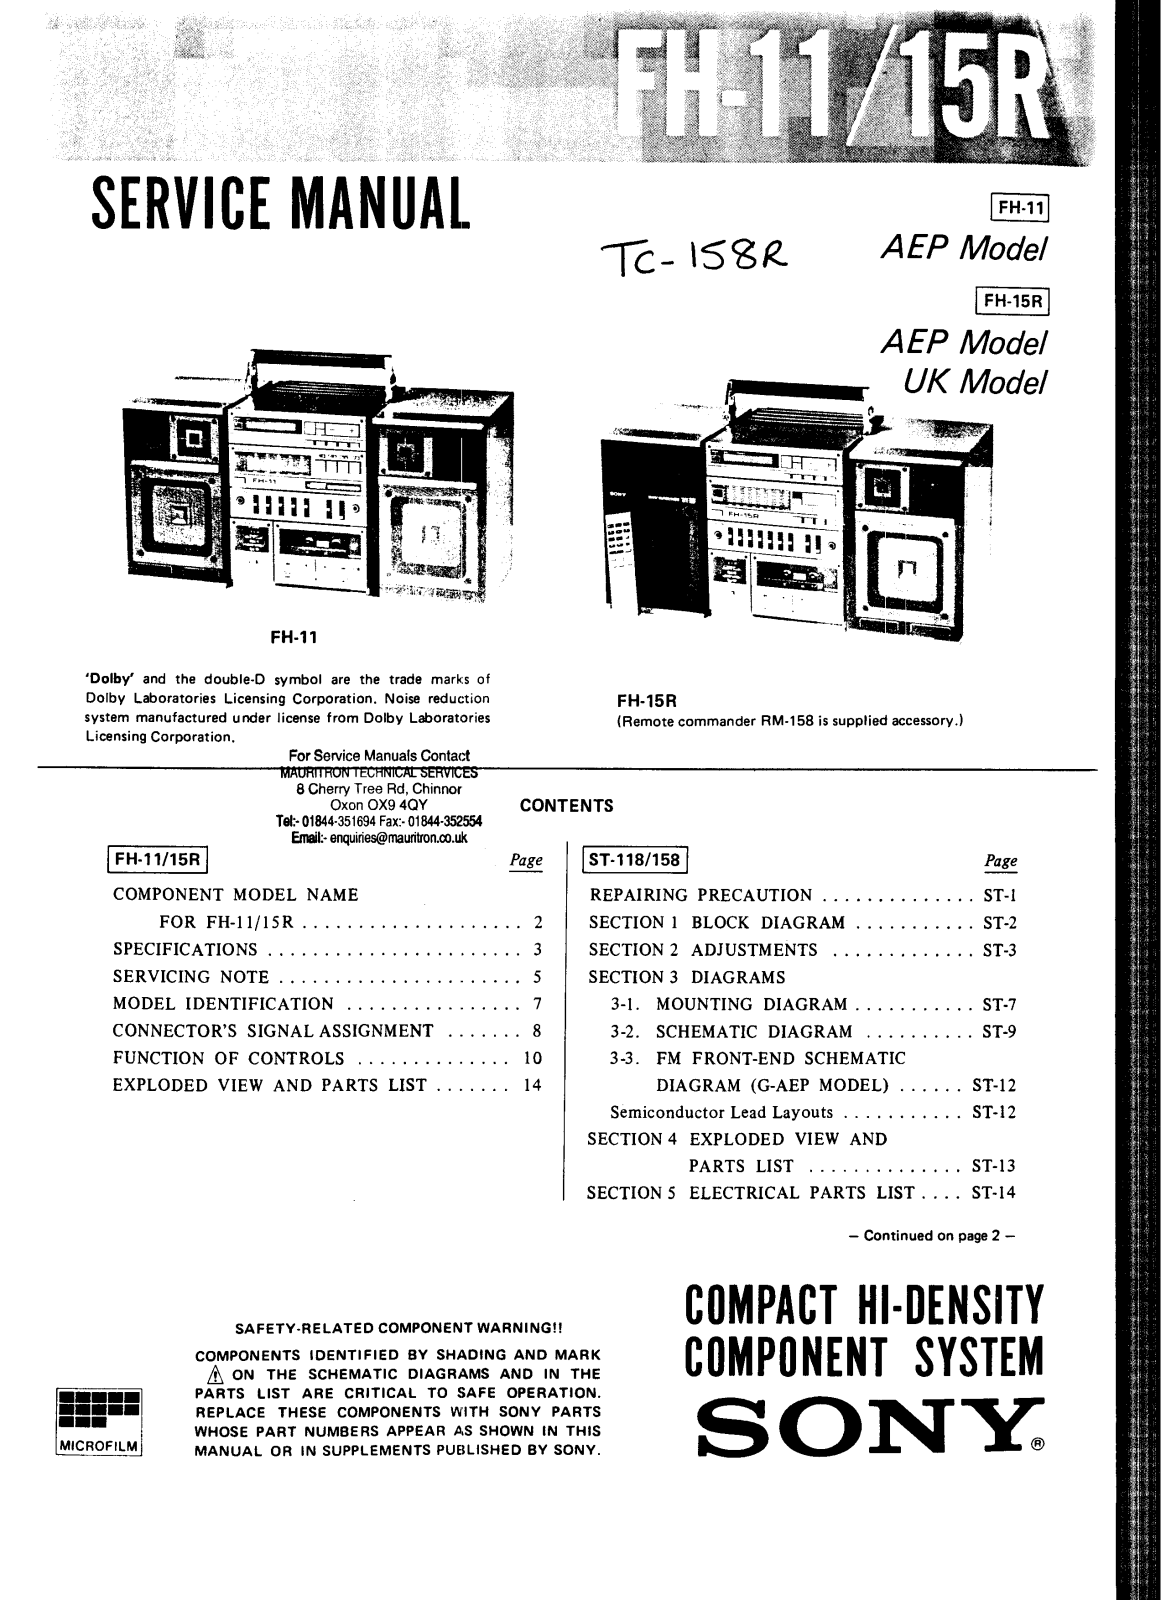 Sony FH-11 Service manual